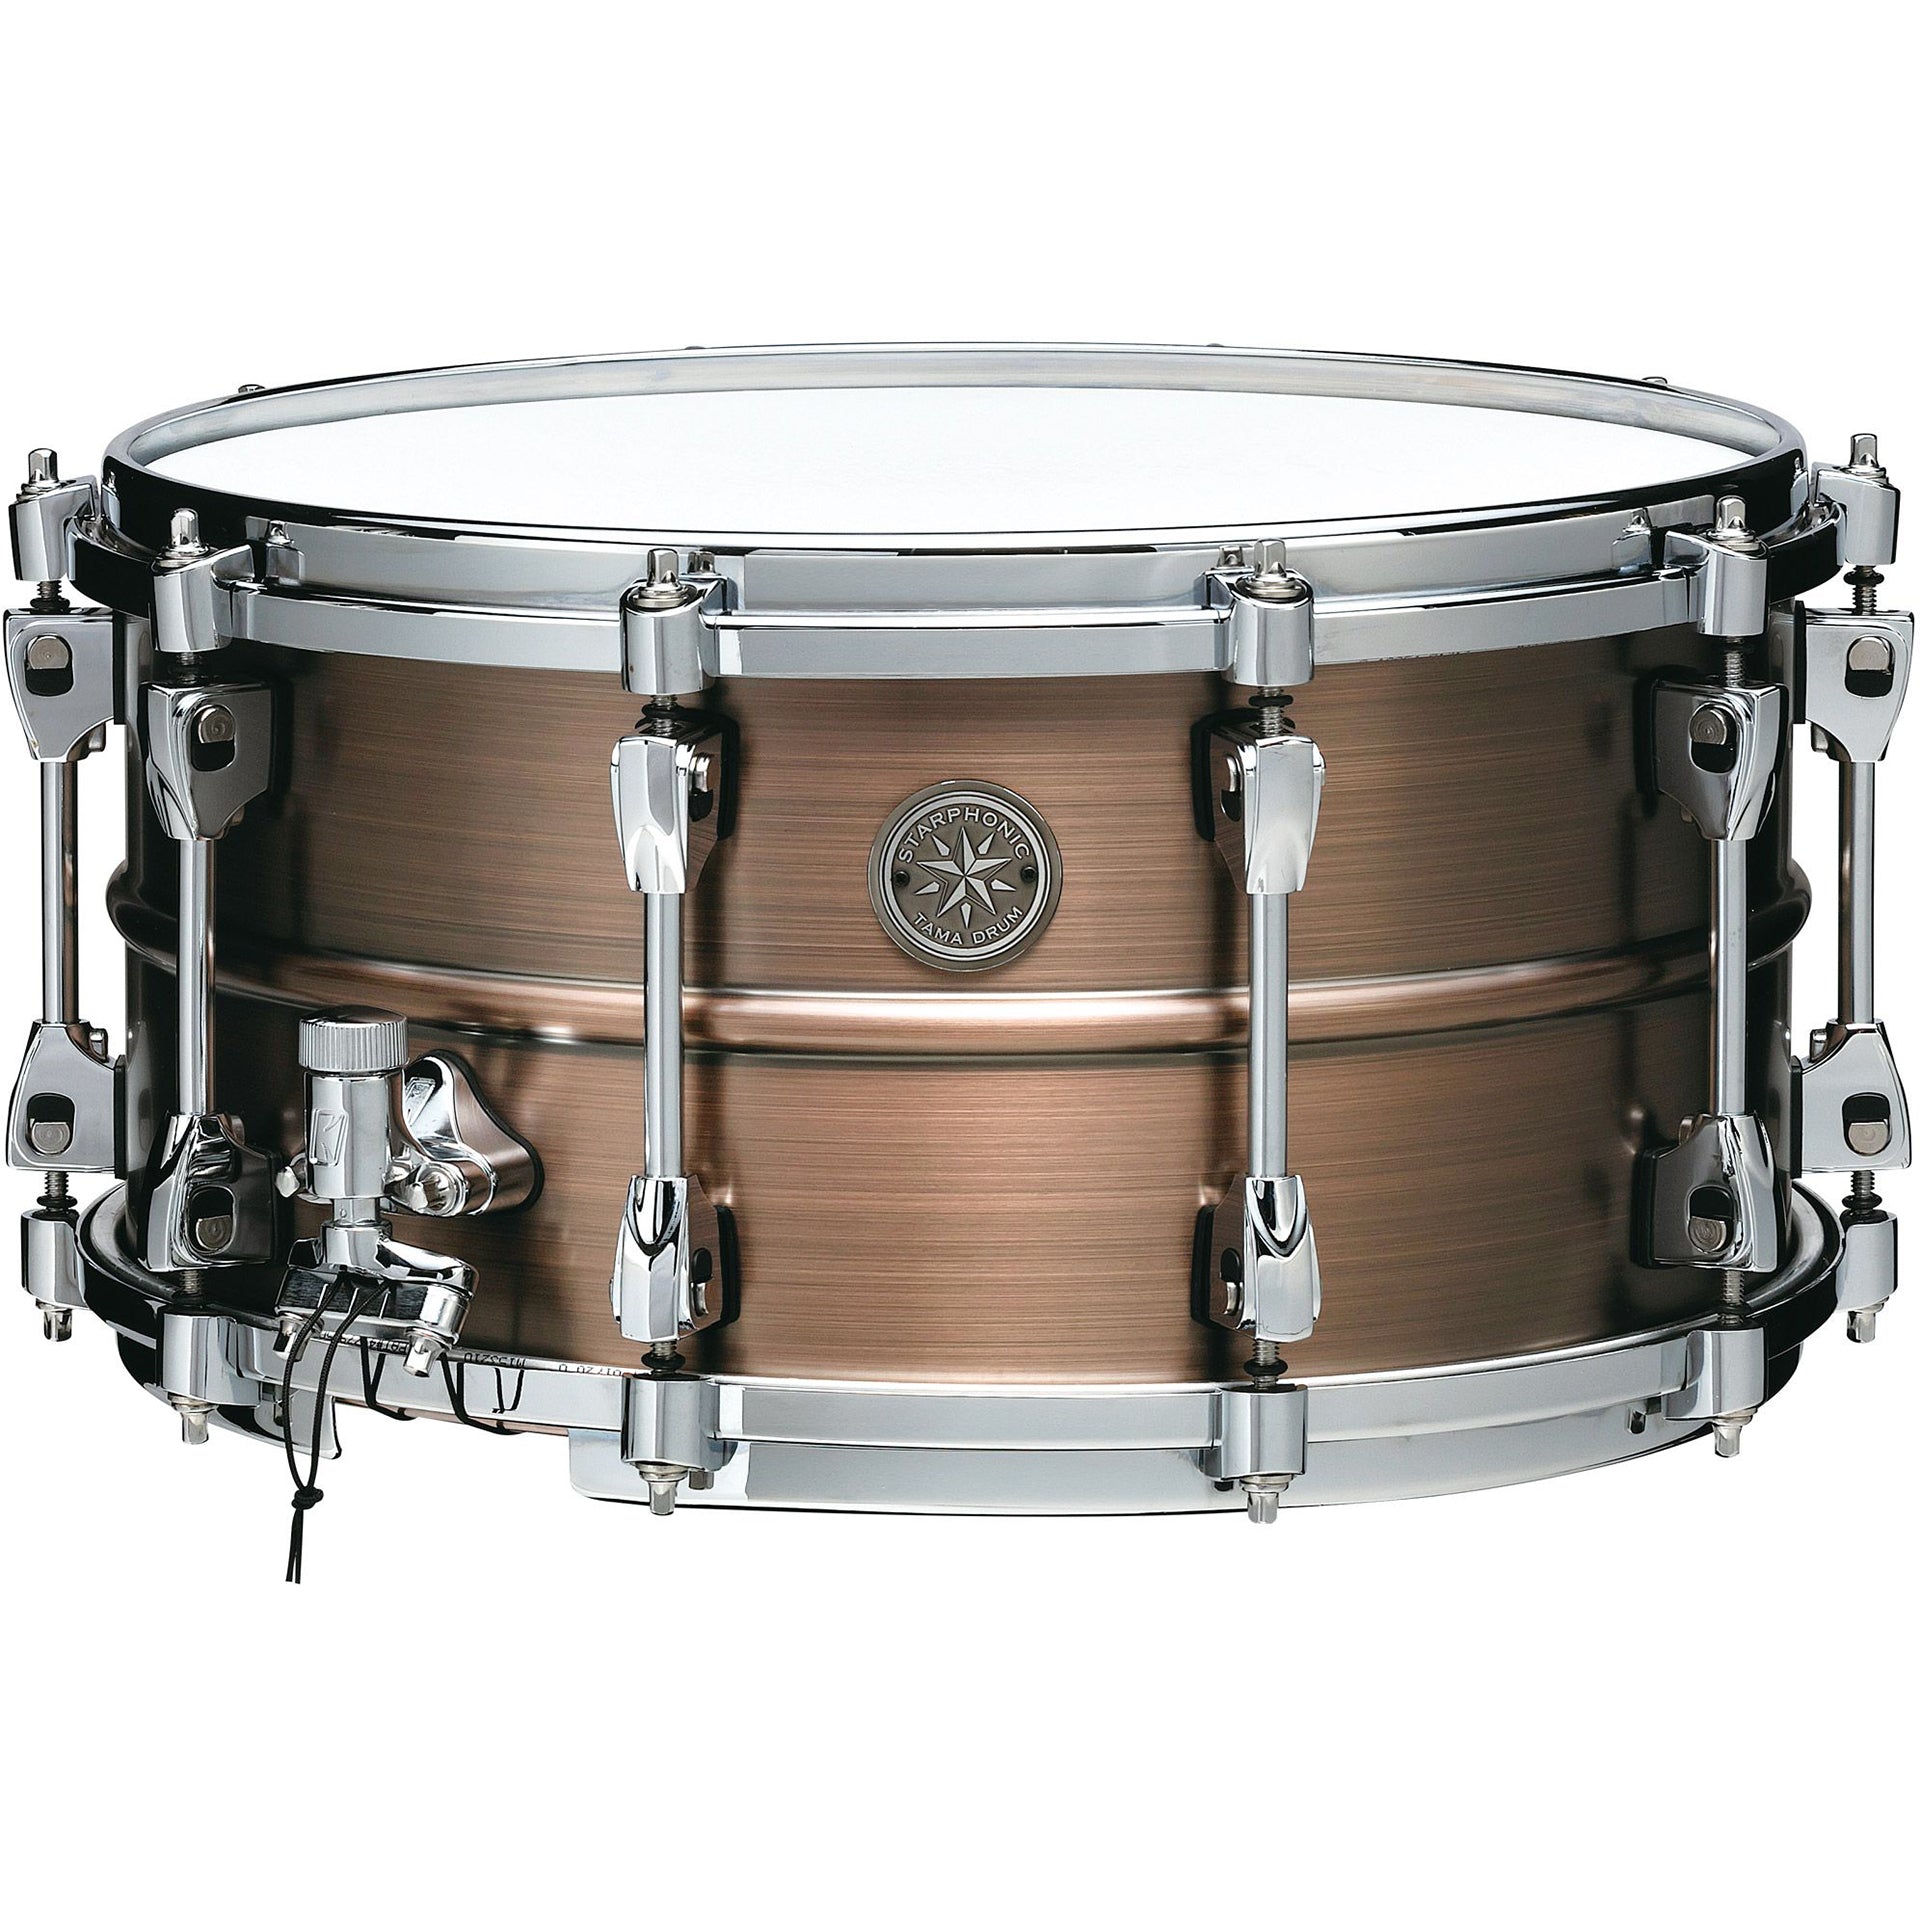 TAMA Starphonic Snare Drum 7x14